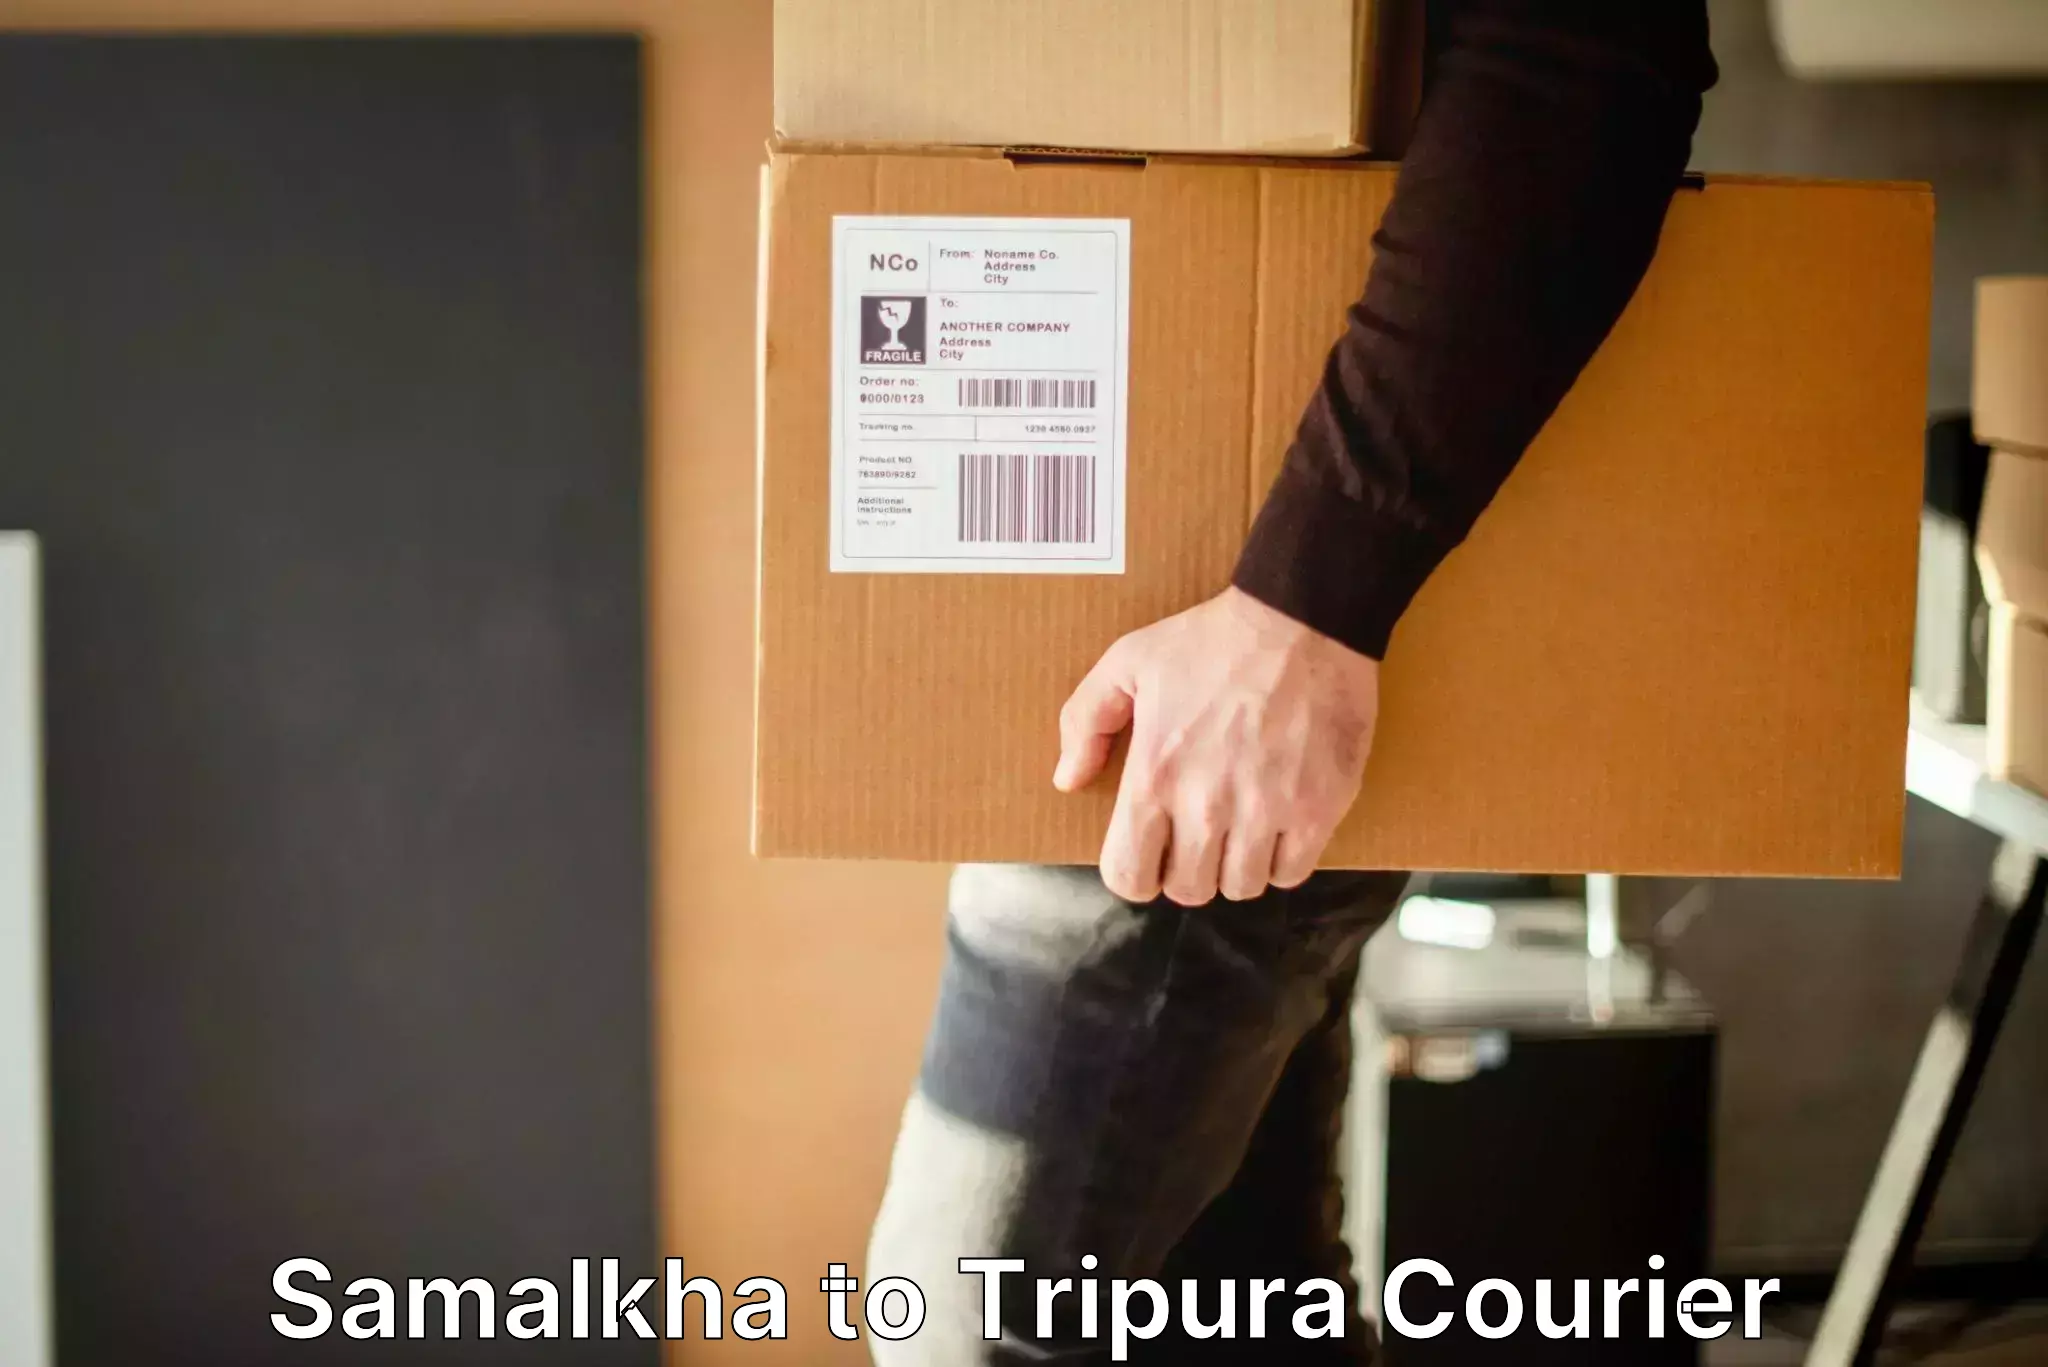 Luggage transport company Samalkha to Tripura